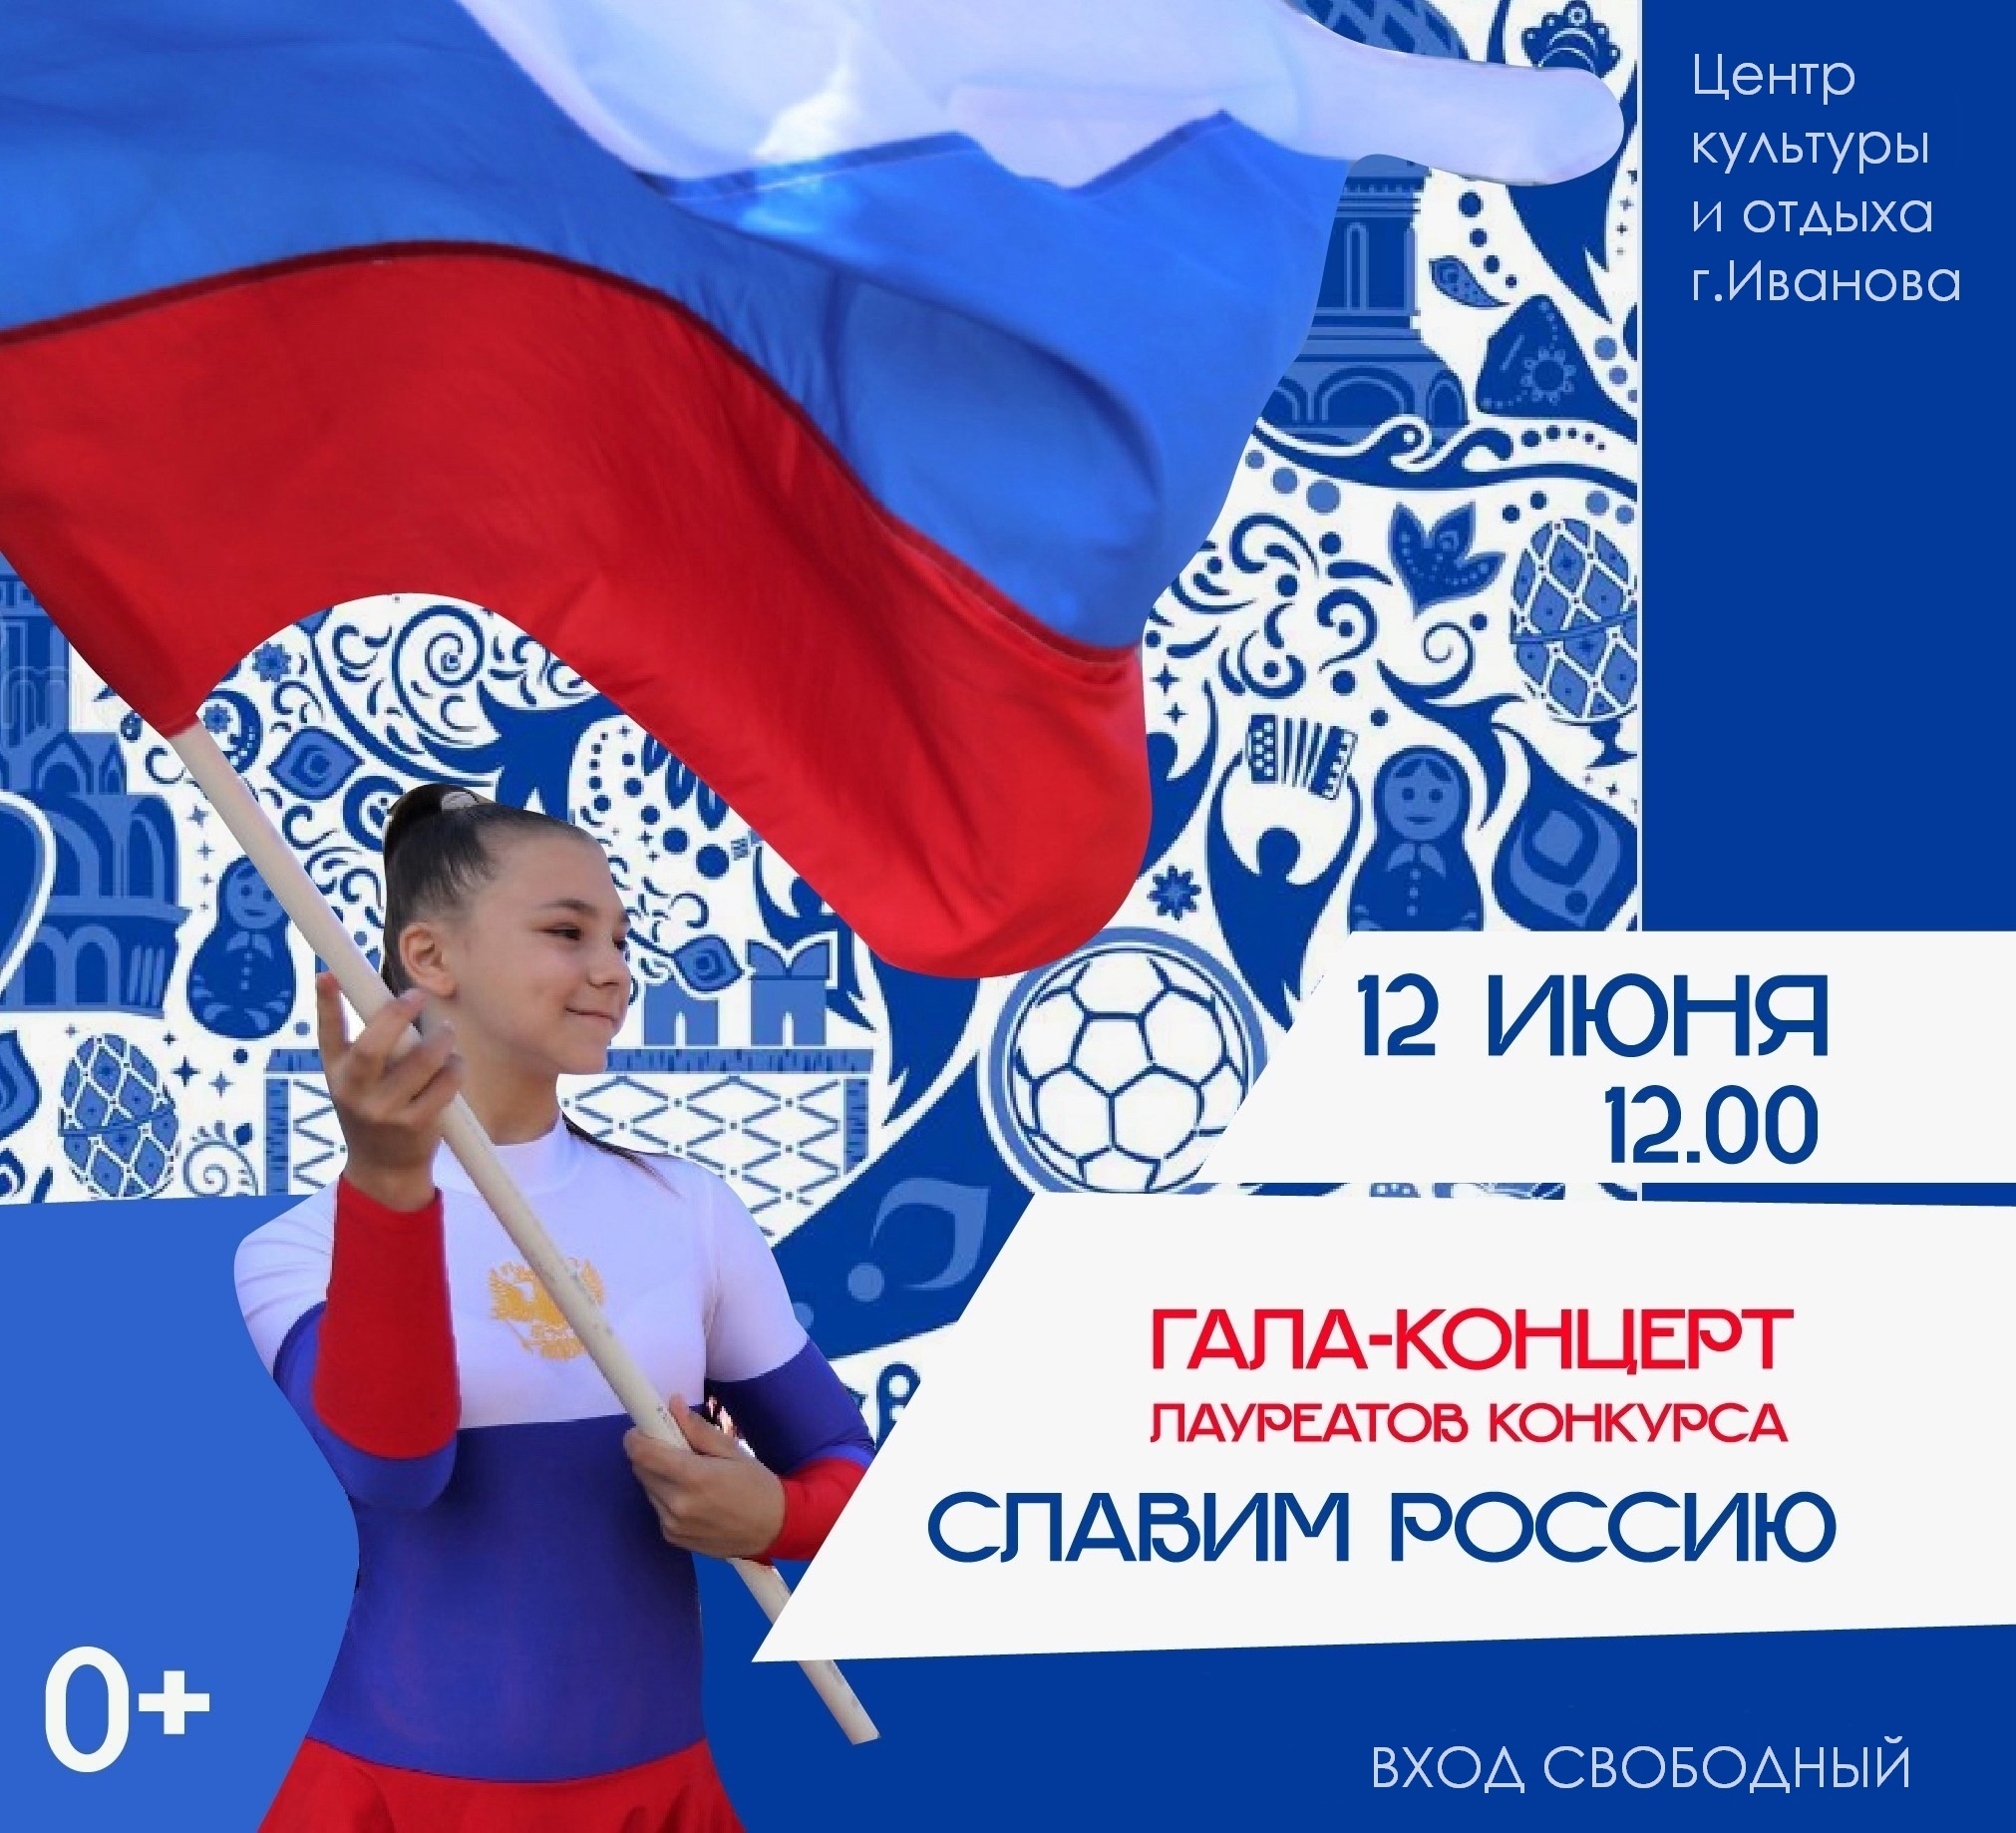 Гала-концерт фестиваля "Славим Россию" пройдет в Иванове